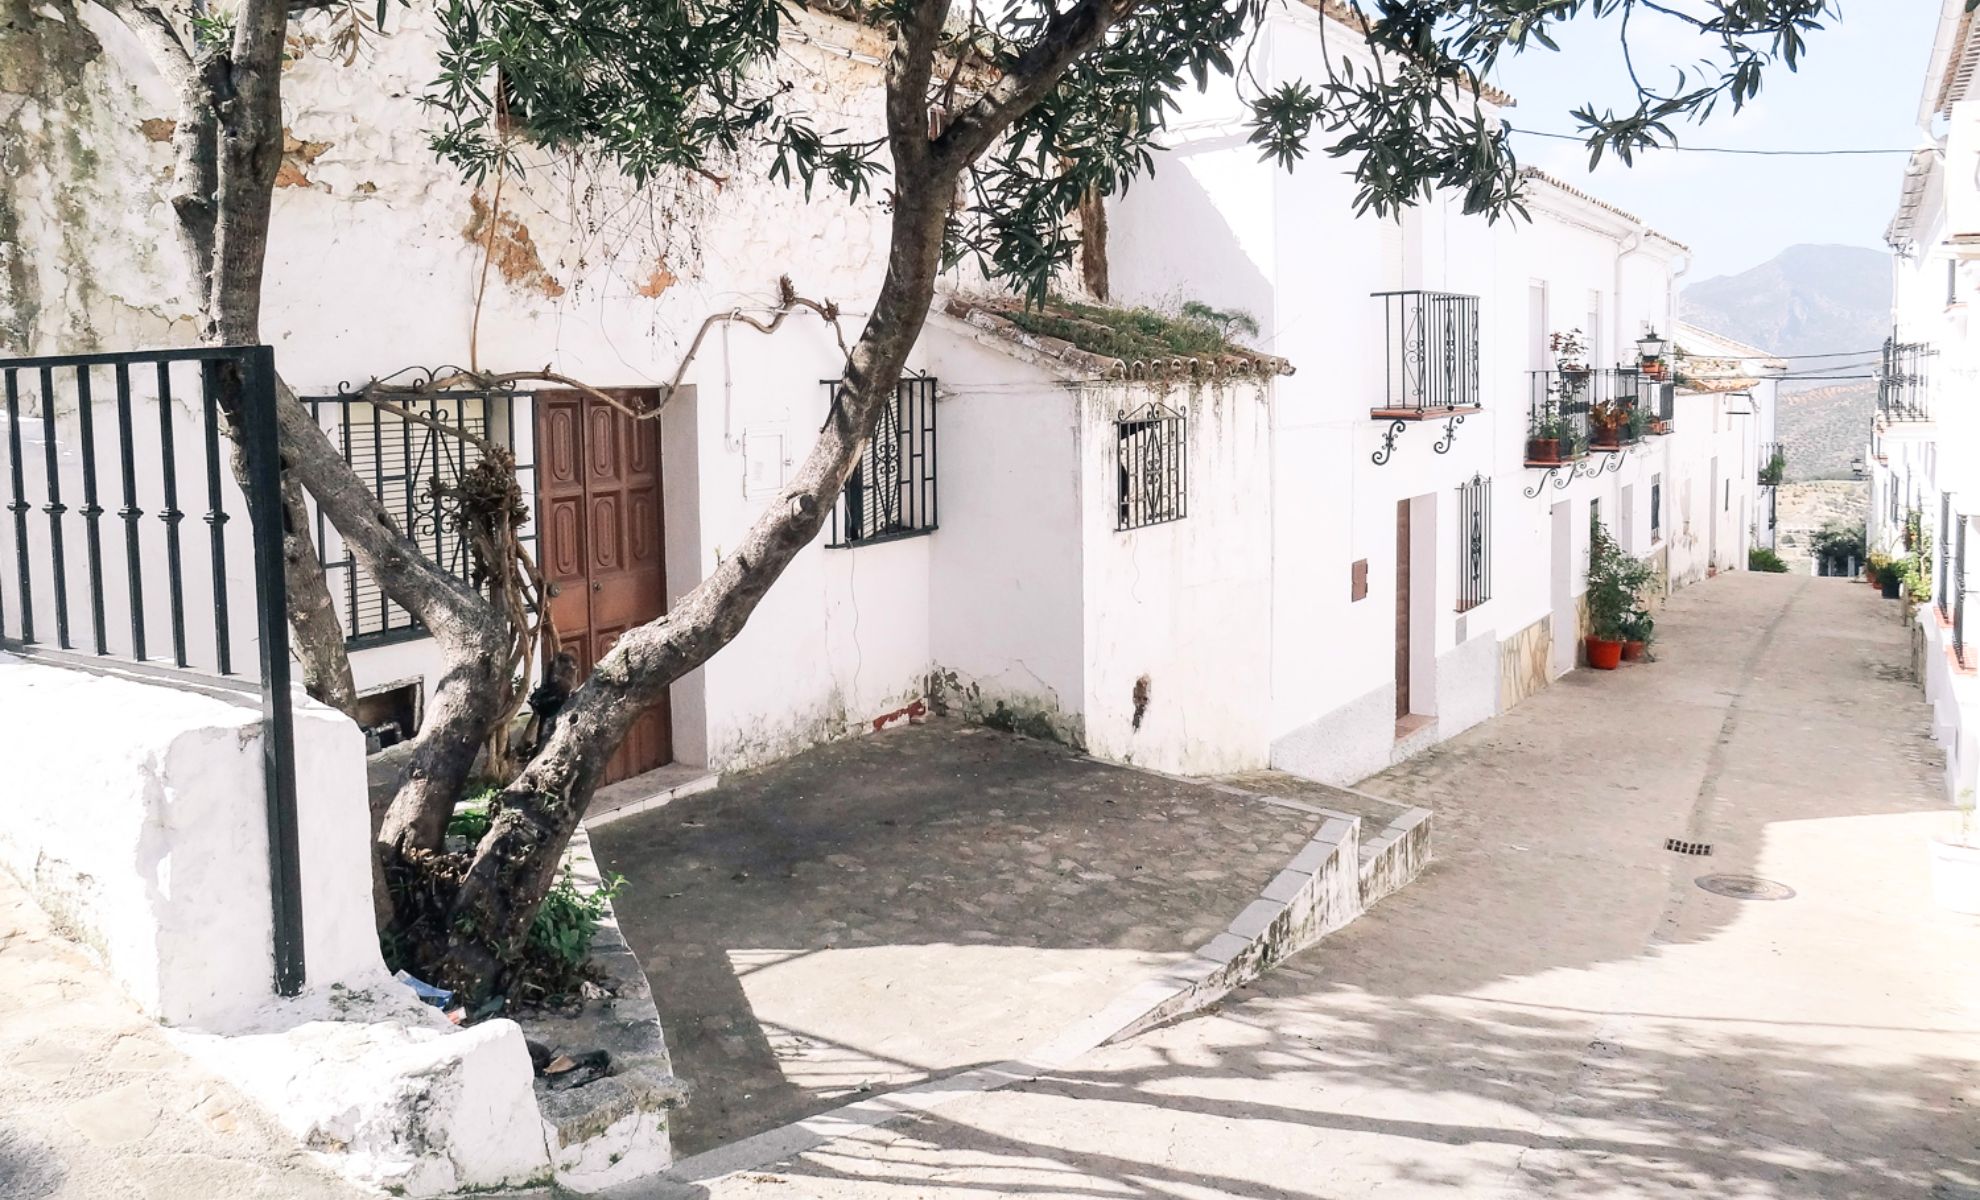 La route des villages blancs d’Andalousie, Espagne